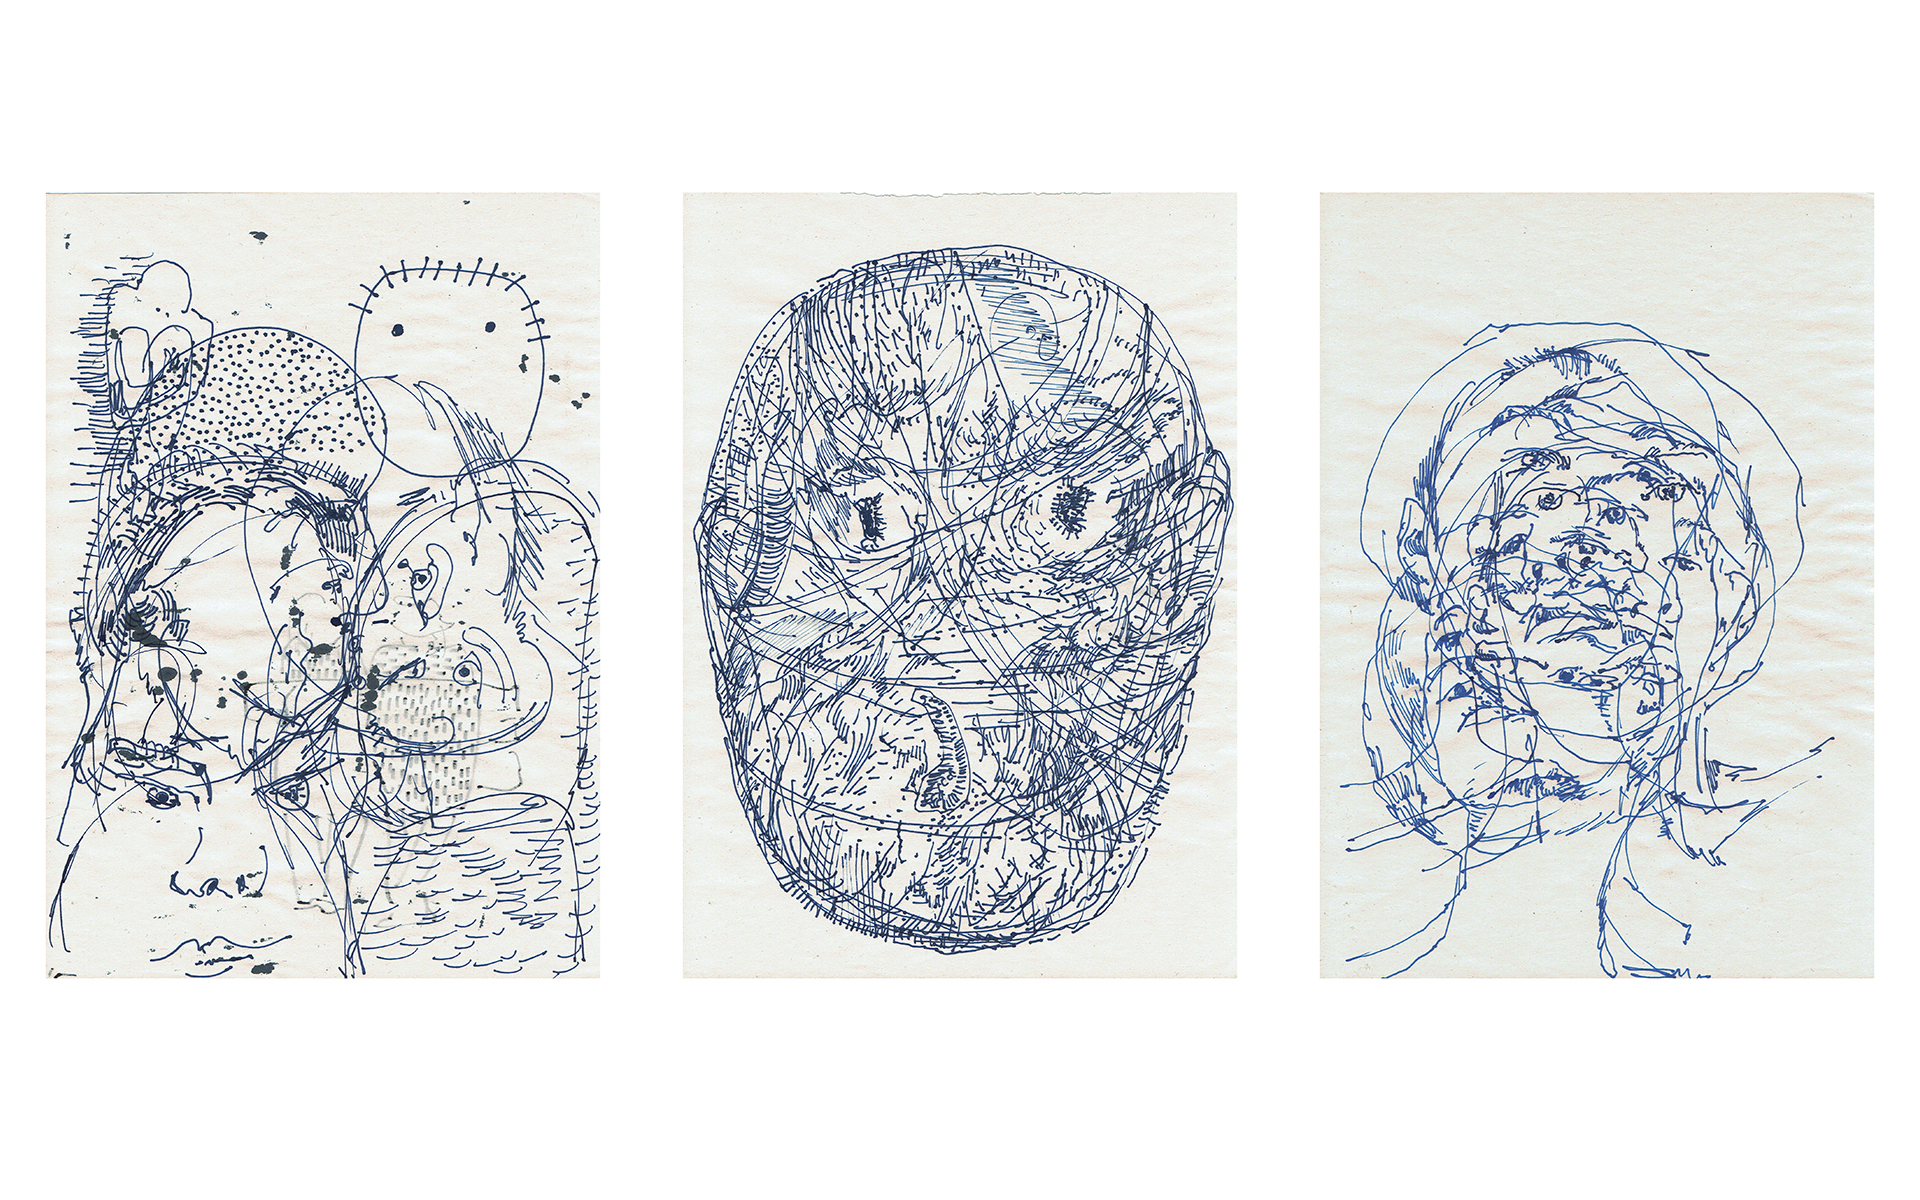 Dokumentacja 3 grafik wykonanych niebieskim tuszem. Każda z nich prezentuje różne ujęcia twarzy.